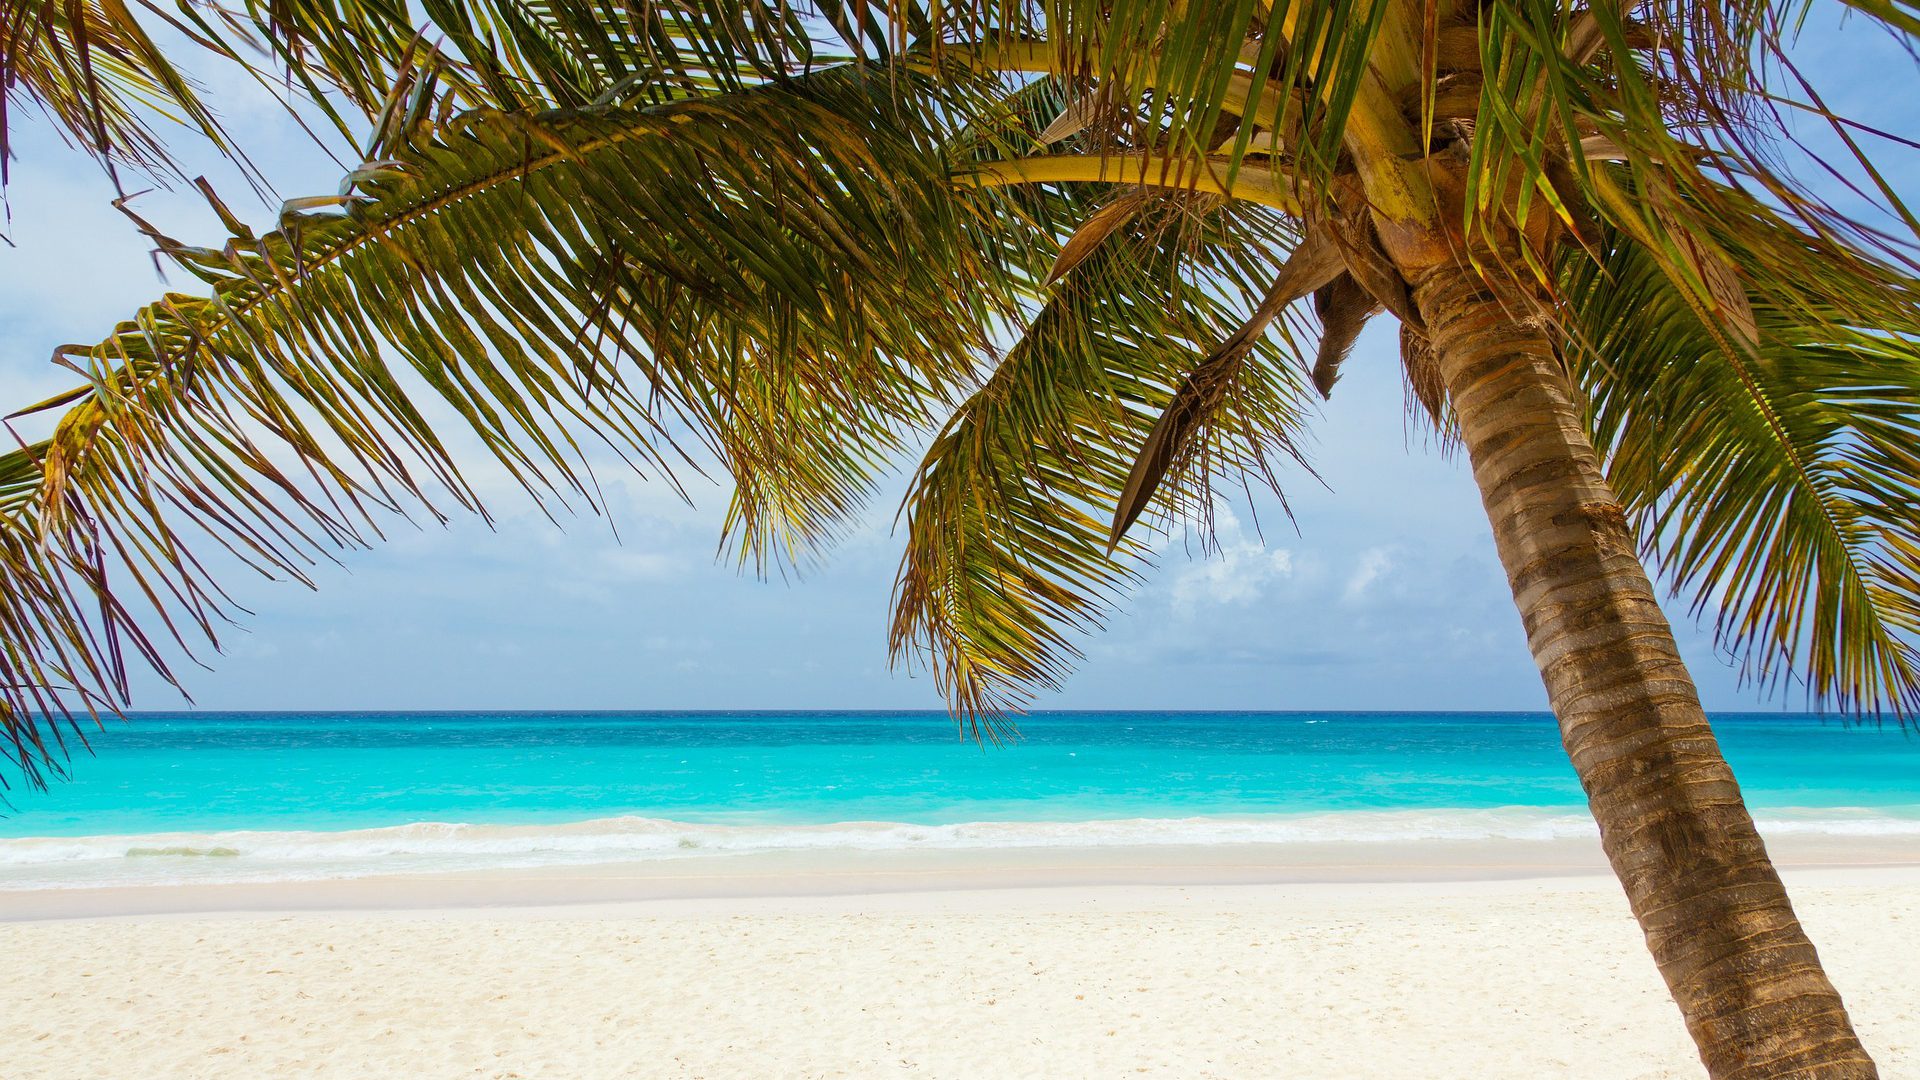 Ein Traum für Taucher und Strandurlauber: Die Dominikanische Republik.